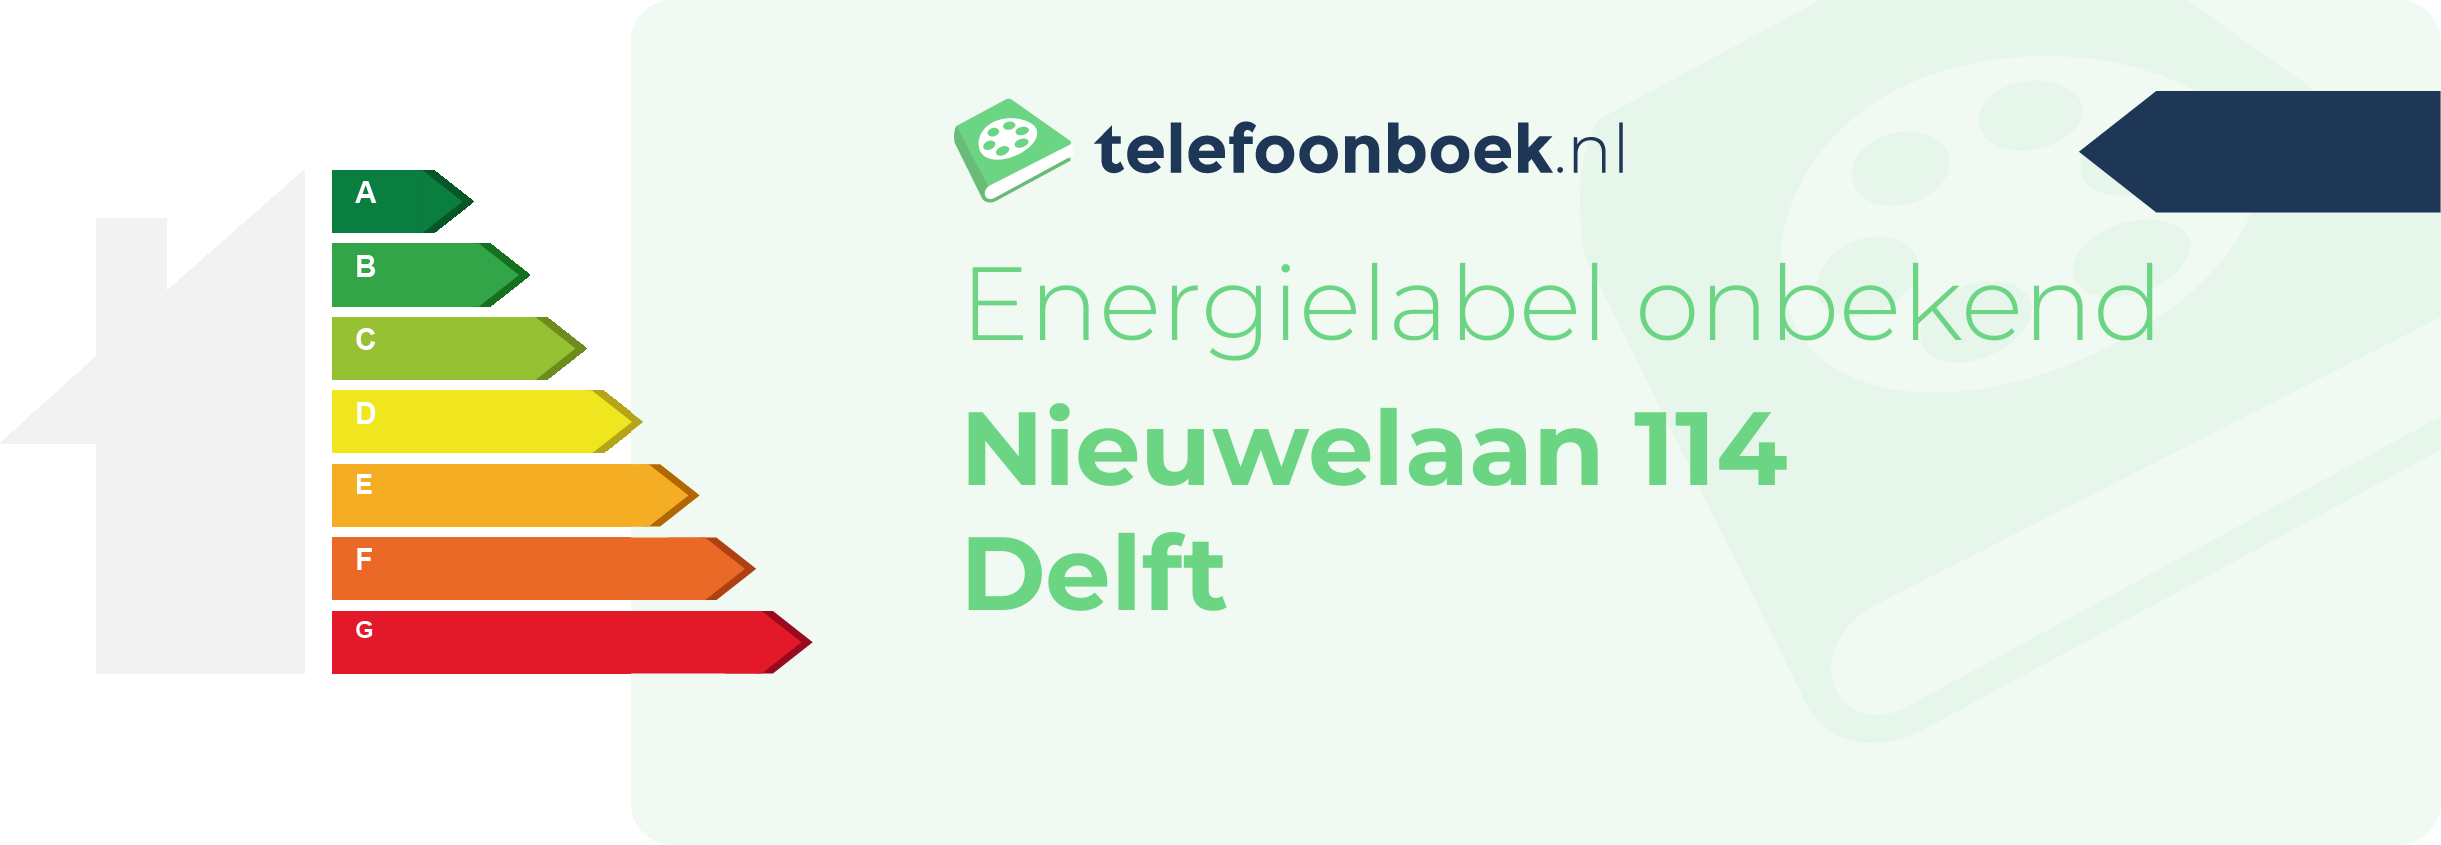 Energielabel Nieuwelaan 114 Delft